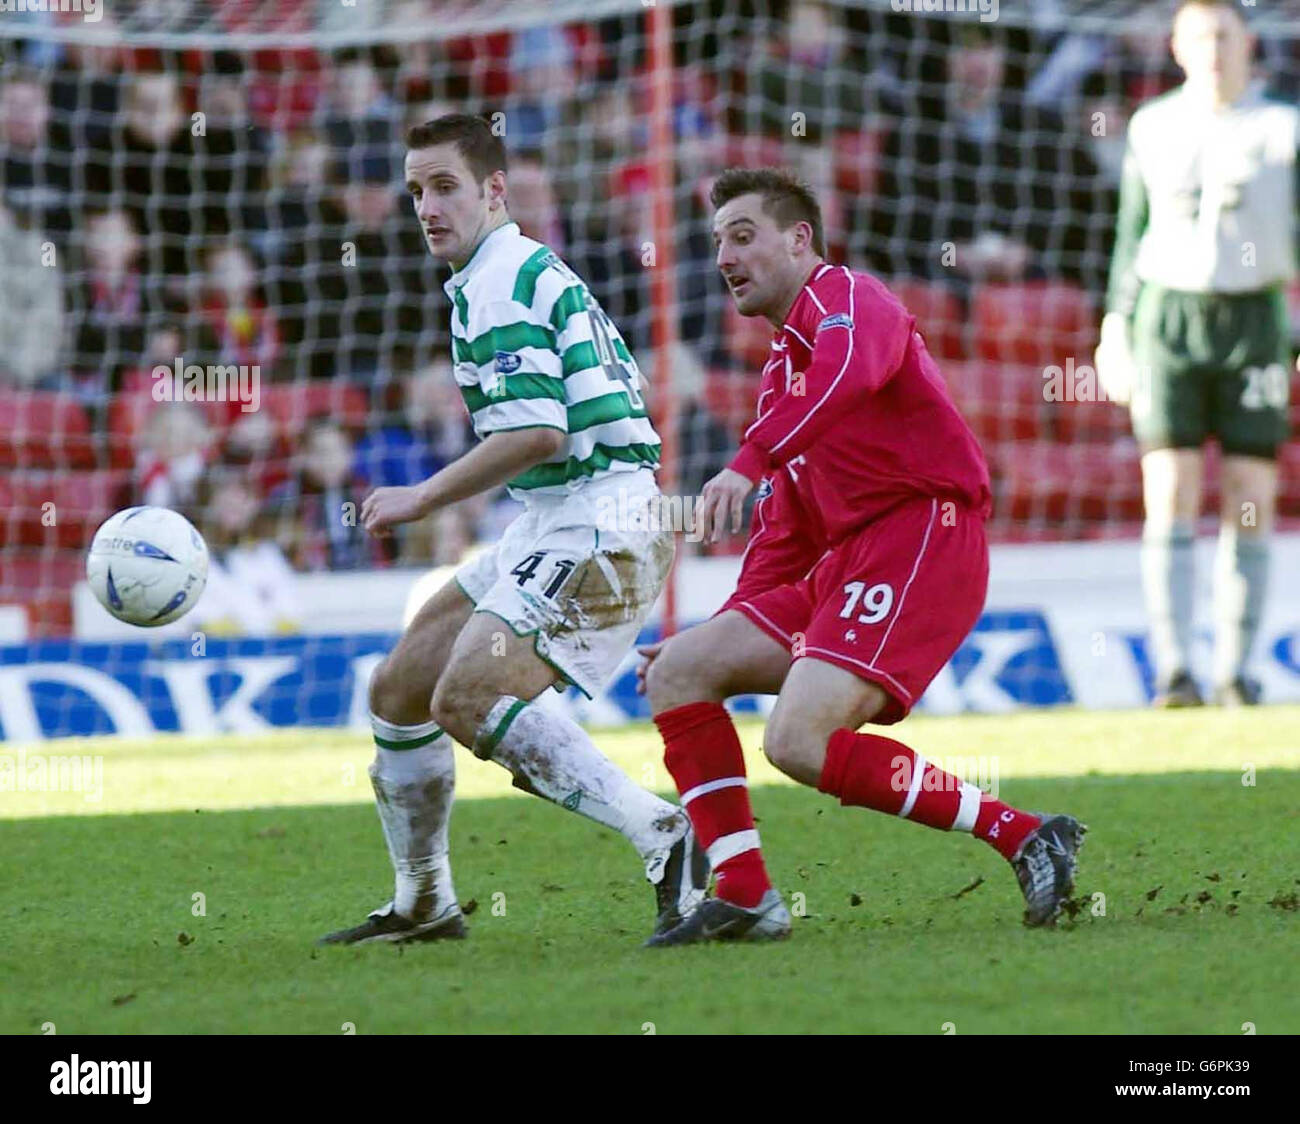 John Kennedy von Celtic schützt den Ball vor David Zdrilic von Aberdeen während des Spiels der Bank of Scotland Premier League im Pittodrie Stadium, Aberdeen. Celtic gewann 3:1. NUR FÜR REDAKTIONELLE ZWECKE. Stockfoto